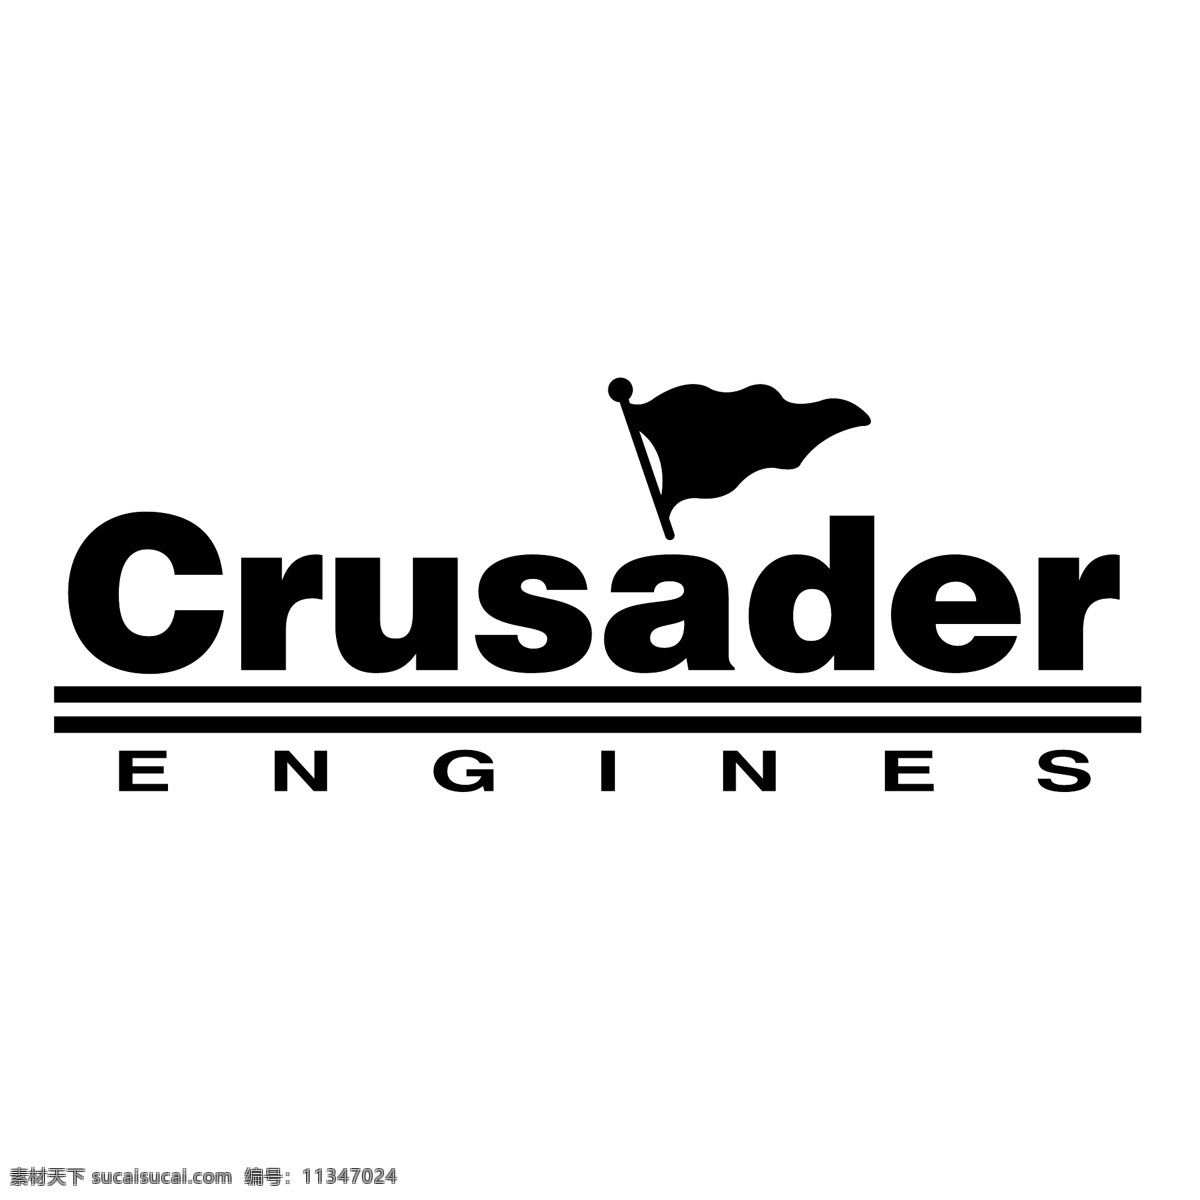 十字军的引擎 发动机 免费矢量 引擎 十字军东征 十字军 矢量发动机 矢量 免费 矢量国际引擎 图形 建筑家居